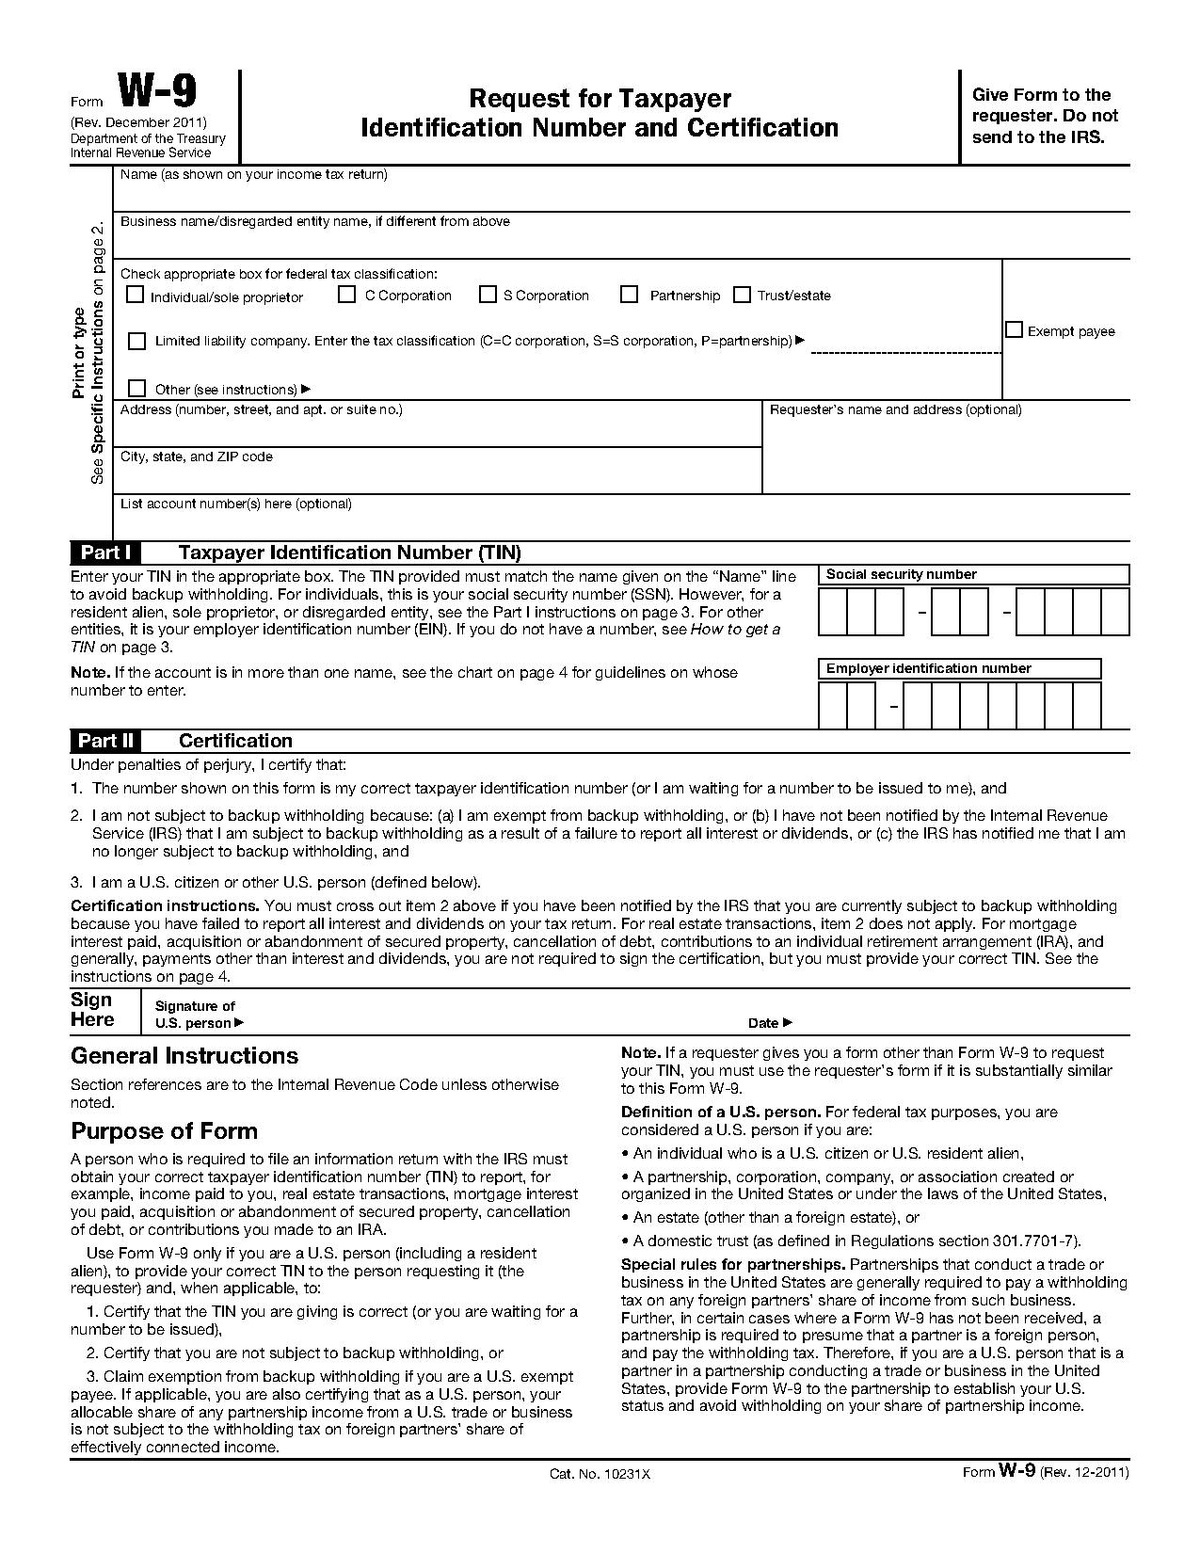 Form W-9 - Wikipedia - W9 Free Printable Form 2016